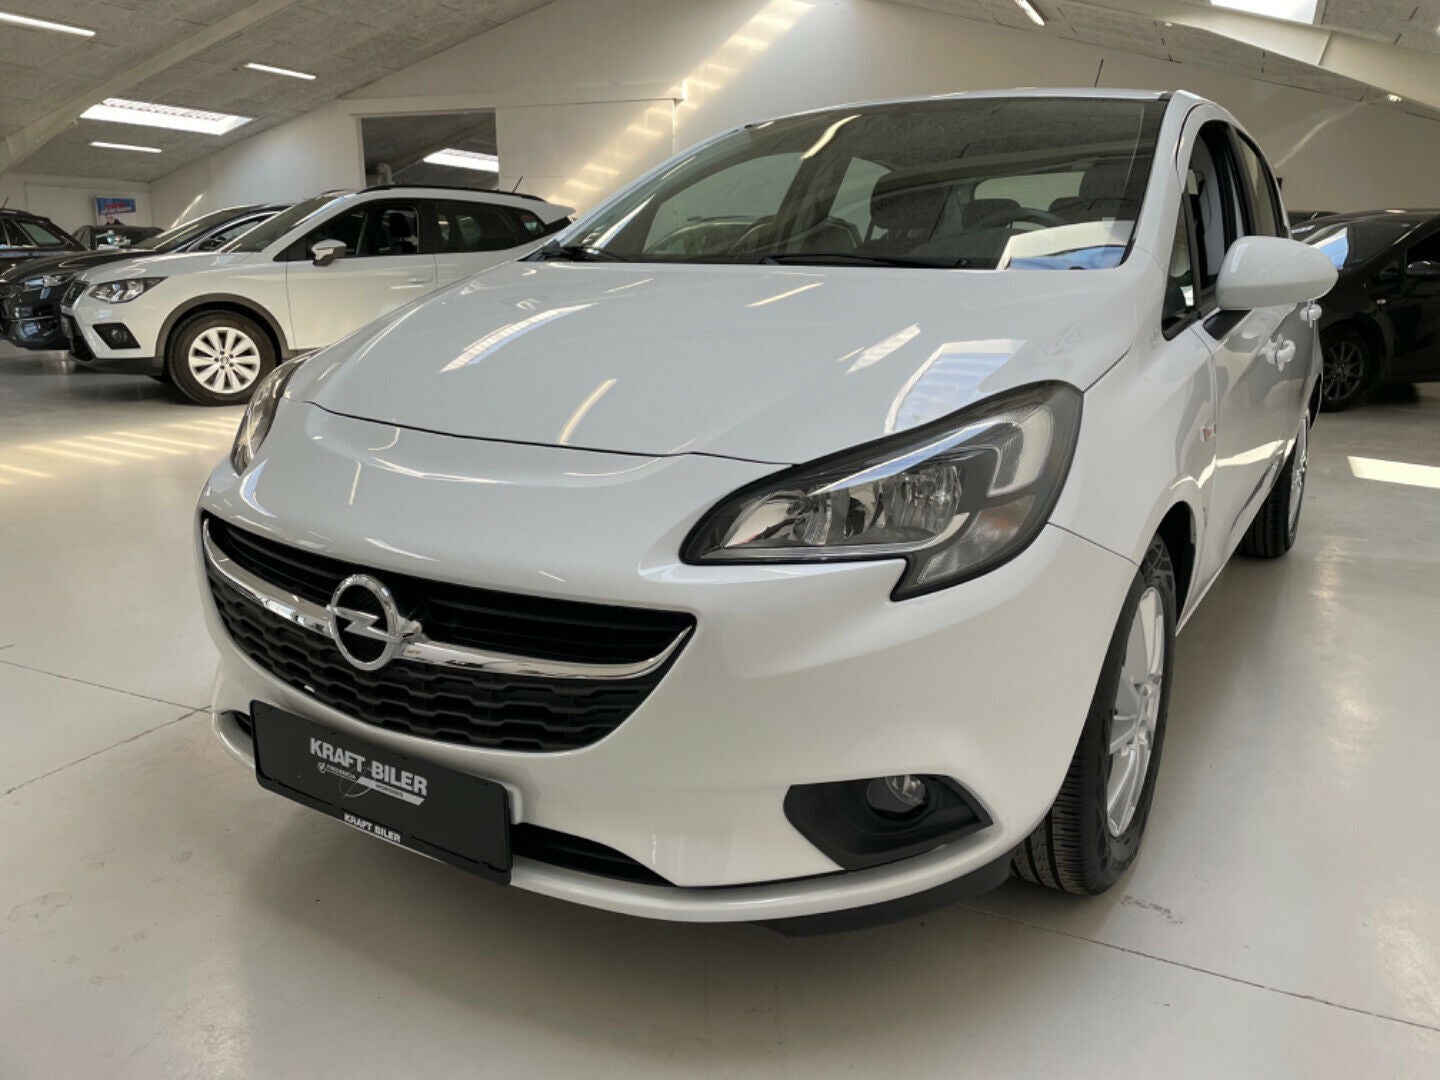 Billede af Opel Corsa 1,4 16V Enjoy